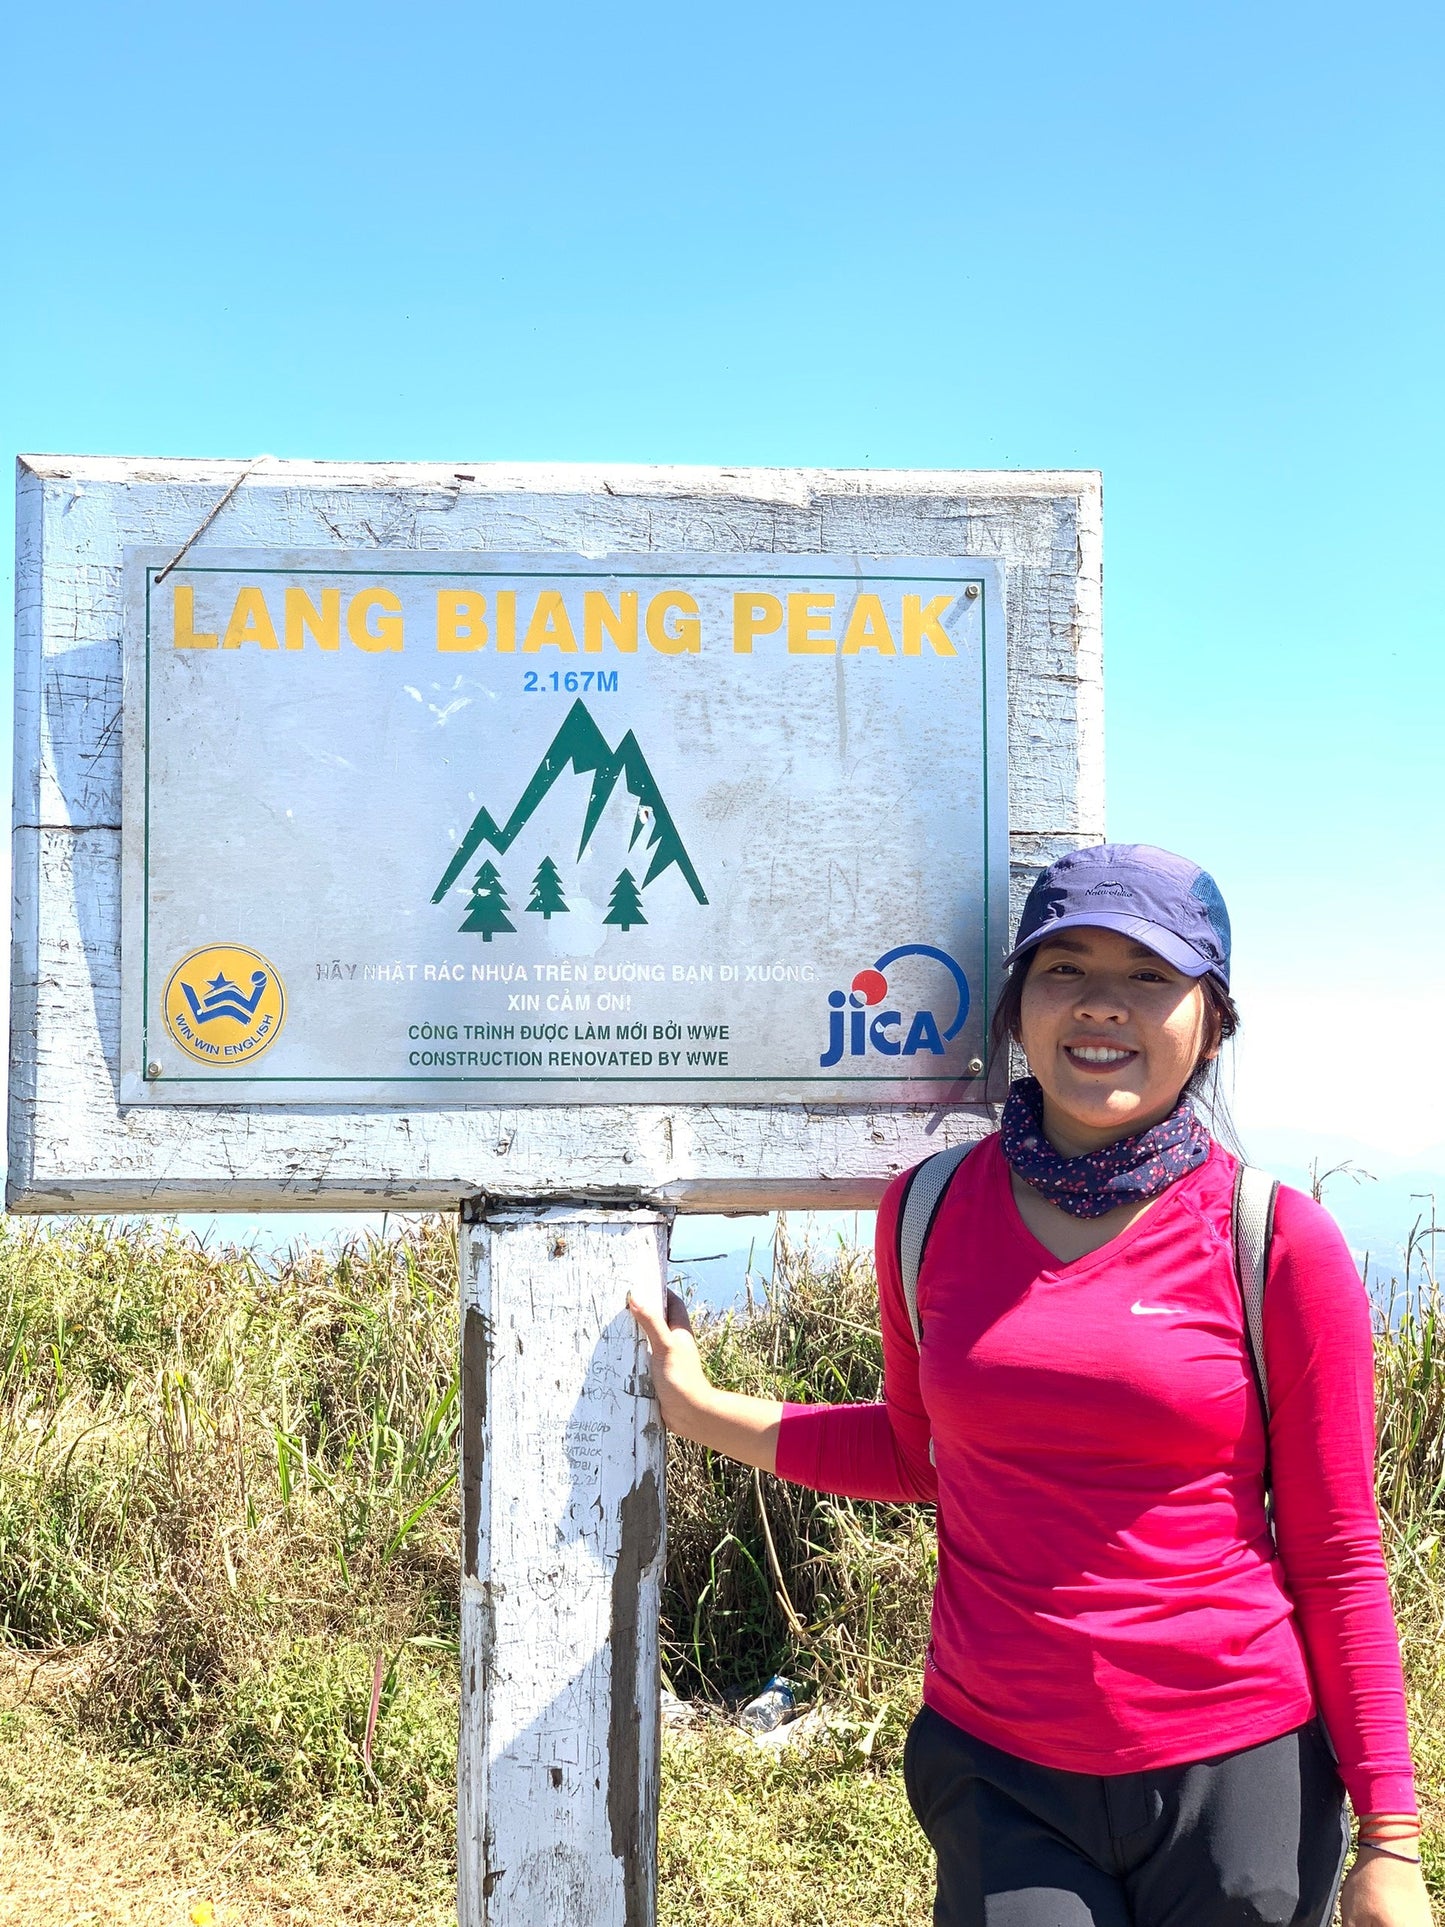 15BR : (Privé-2 JOURS) Mt. Langbiang (2167m) : Conquérir le sommet de Dalat, être témoin de la brume enveloppante